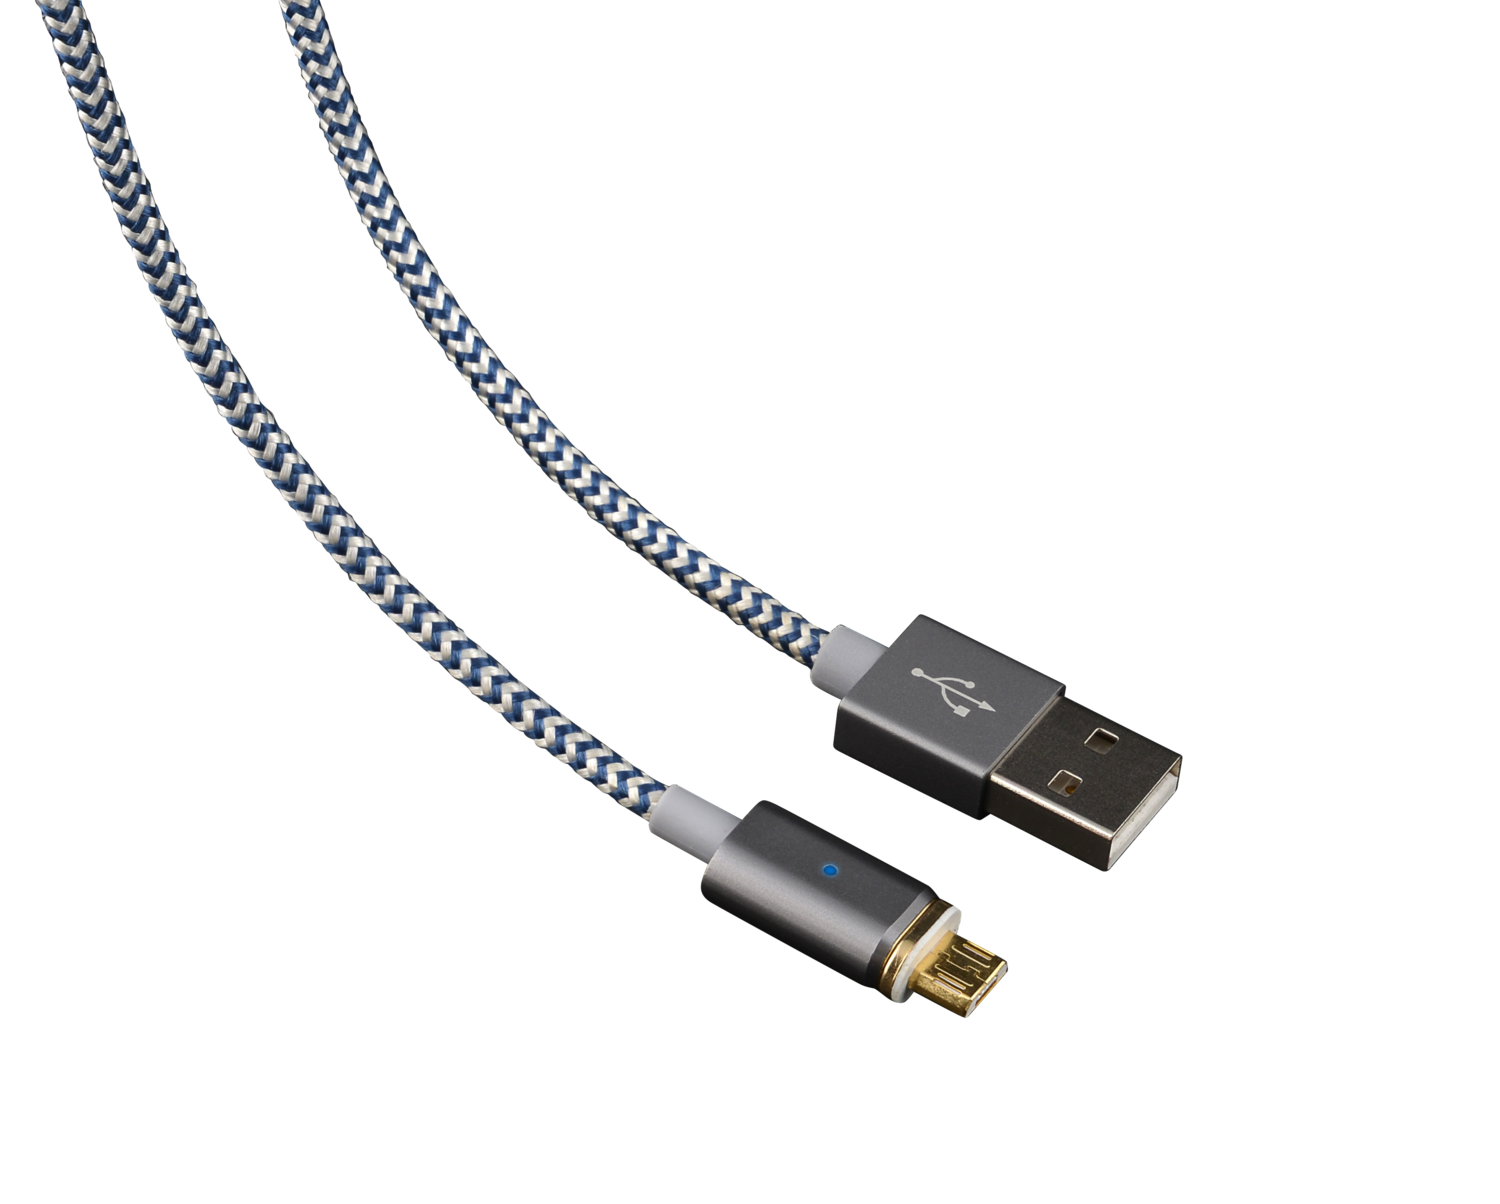 Câble Micro USB à embout magnétique 1,2m